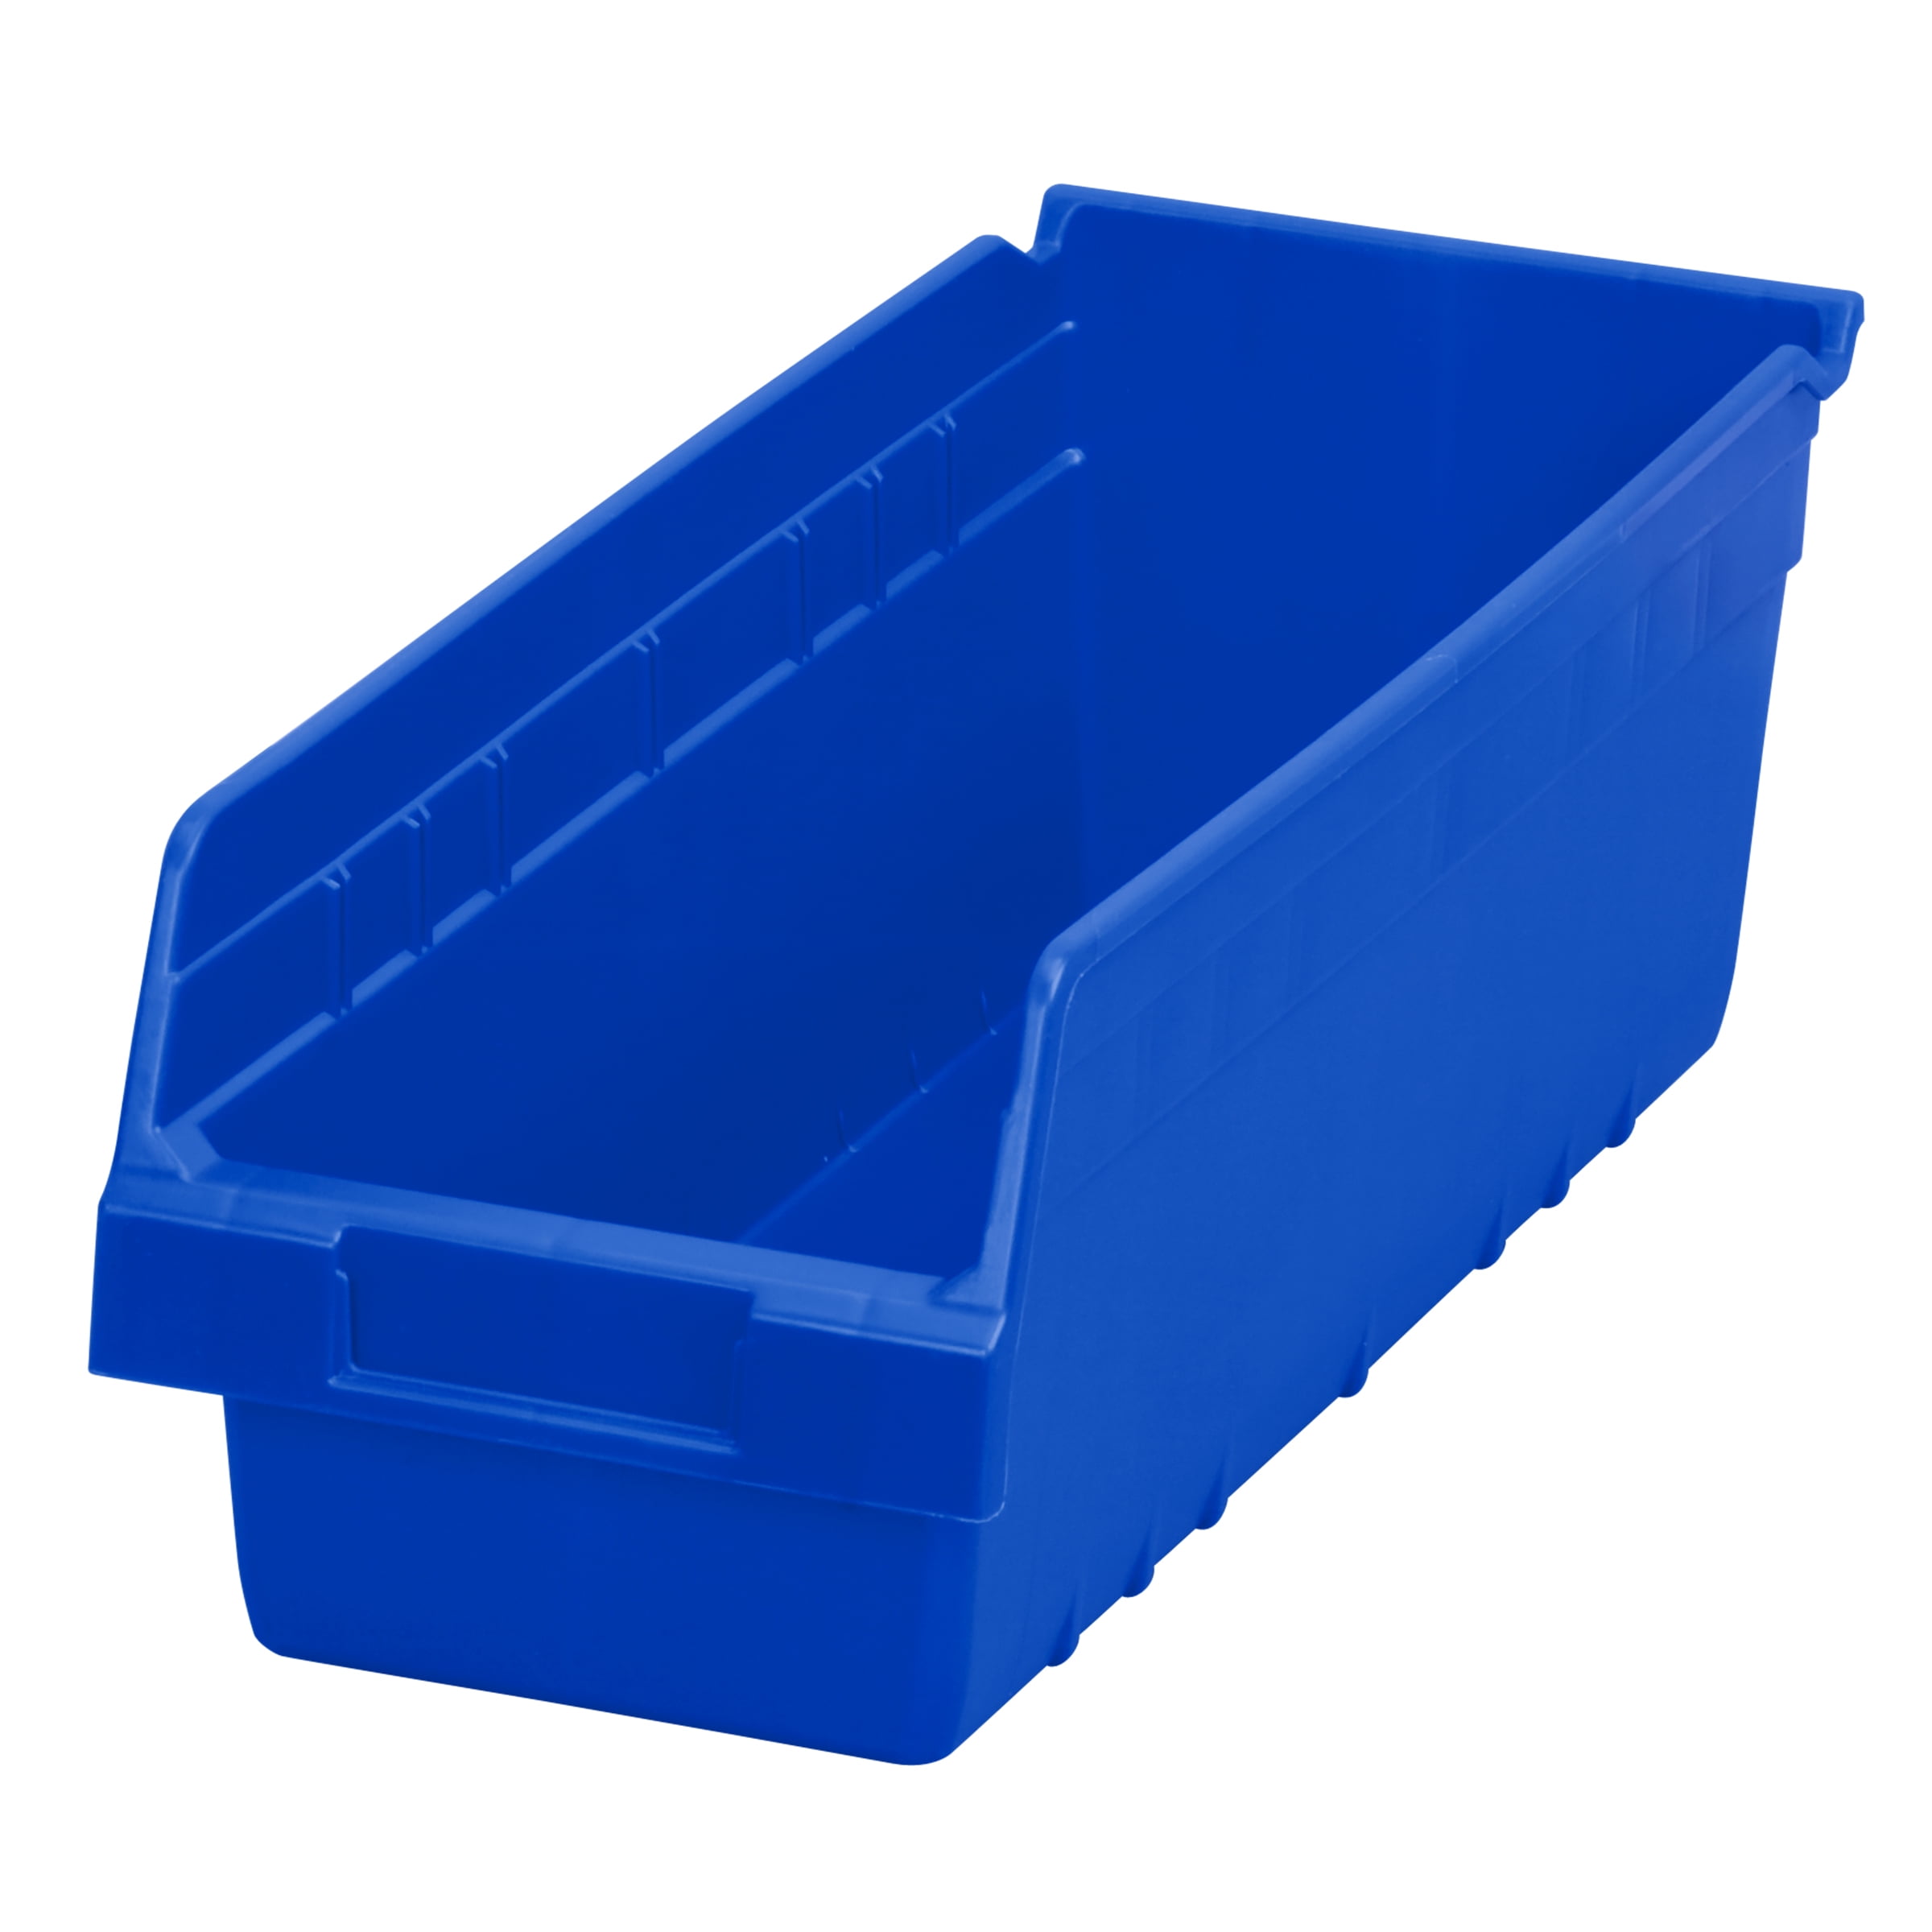 Shelf bin 92x300x82 Blue